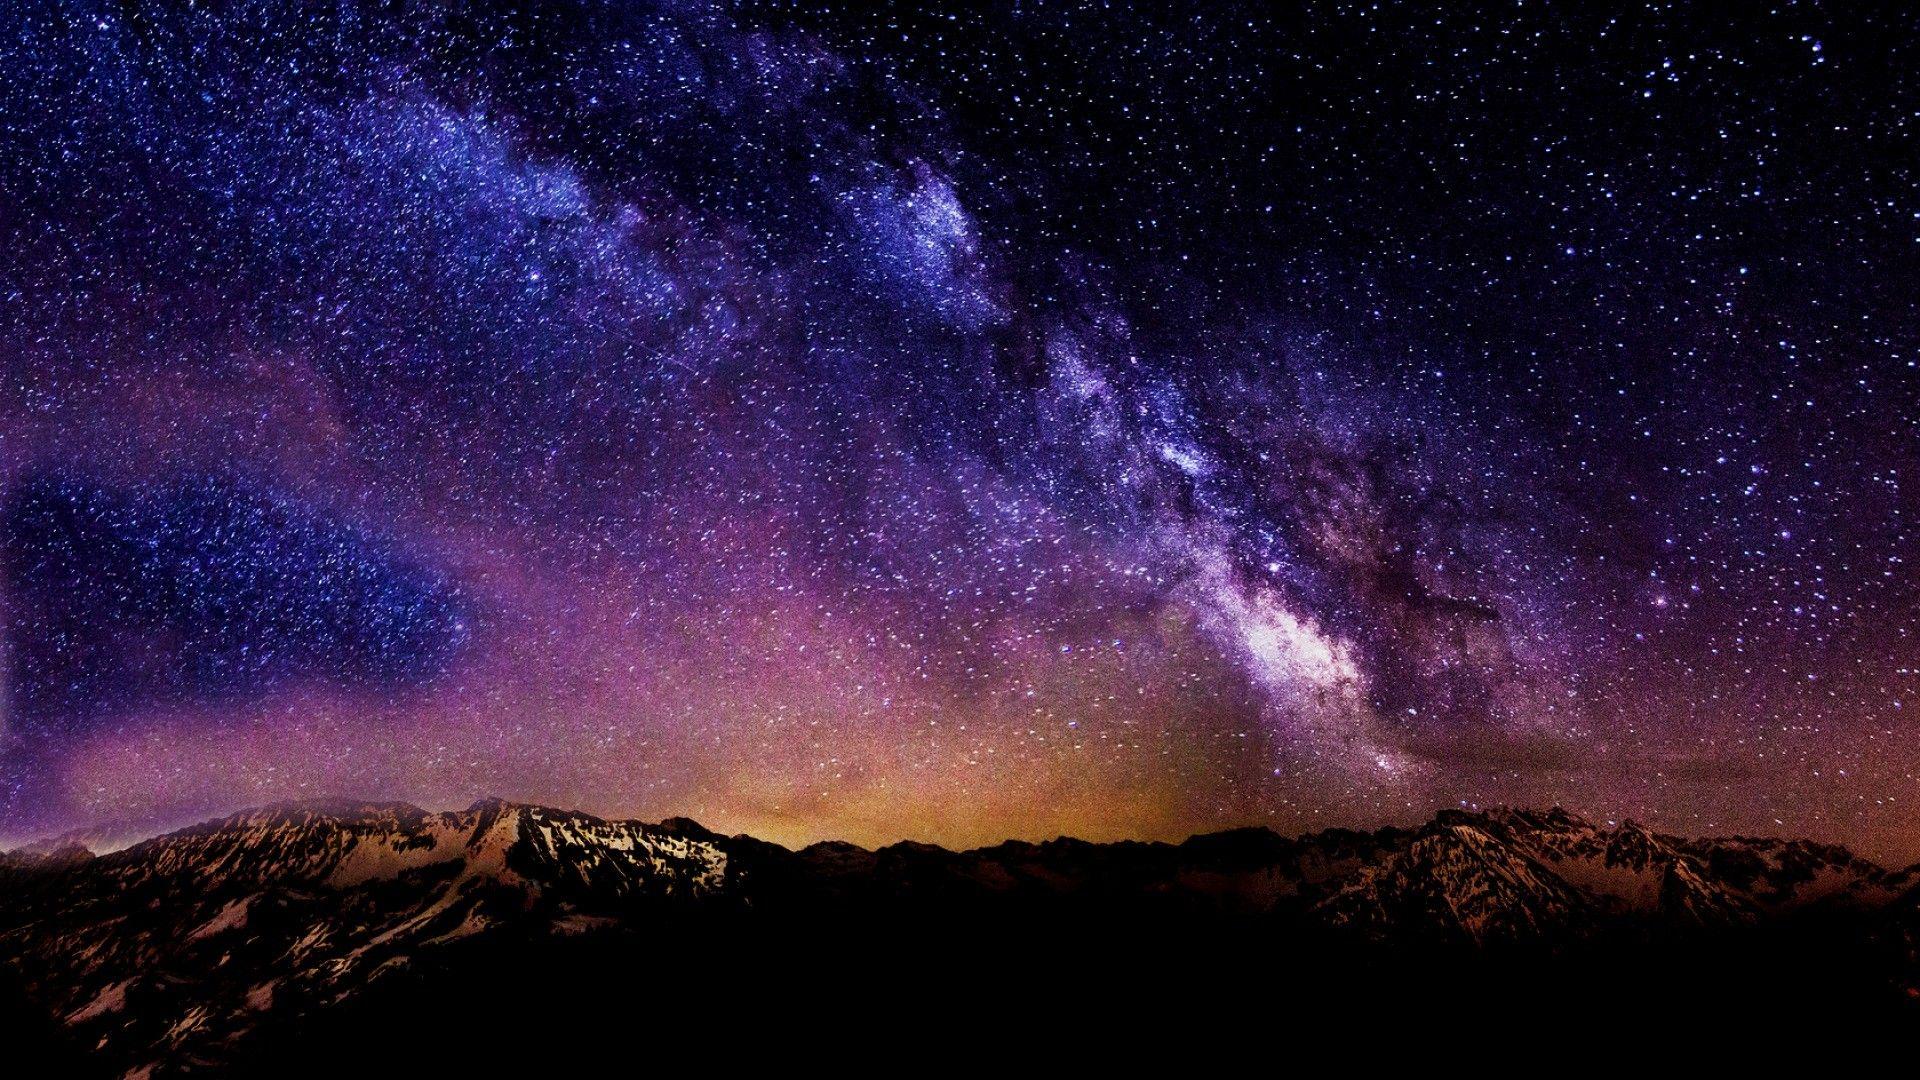 Tận hưởng những đêm mở rộng, ngắm nhìn những vì sao lung linh trên bầu trời hoang sơ với những bức ảnh hình nền tuyệt đẹp này. Bạn sẽ có một trải nghiệm khó quên và lạc quan hơn, chắc chắn!